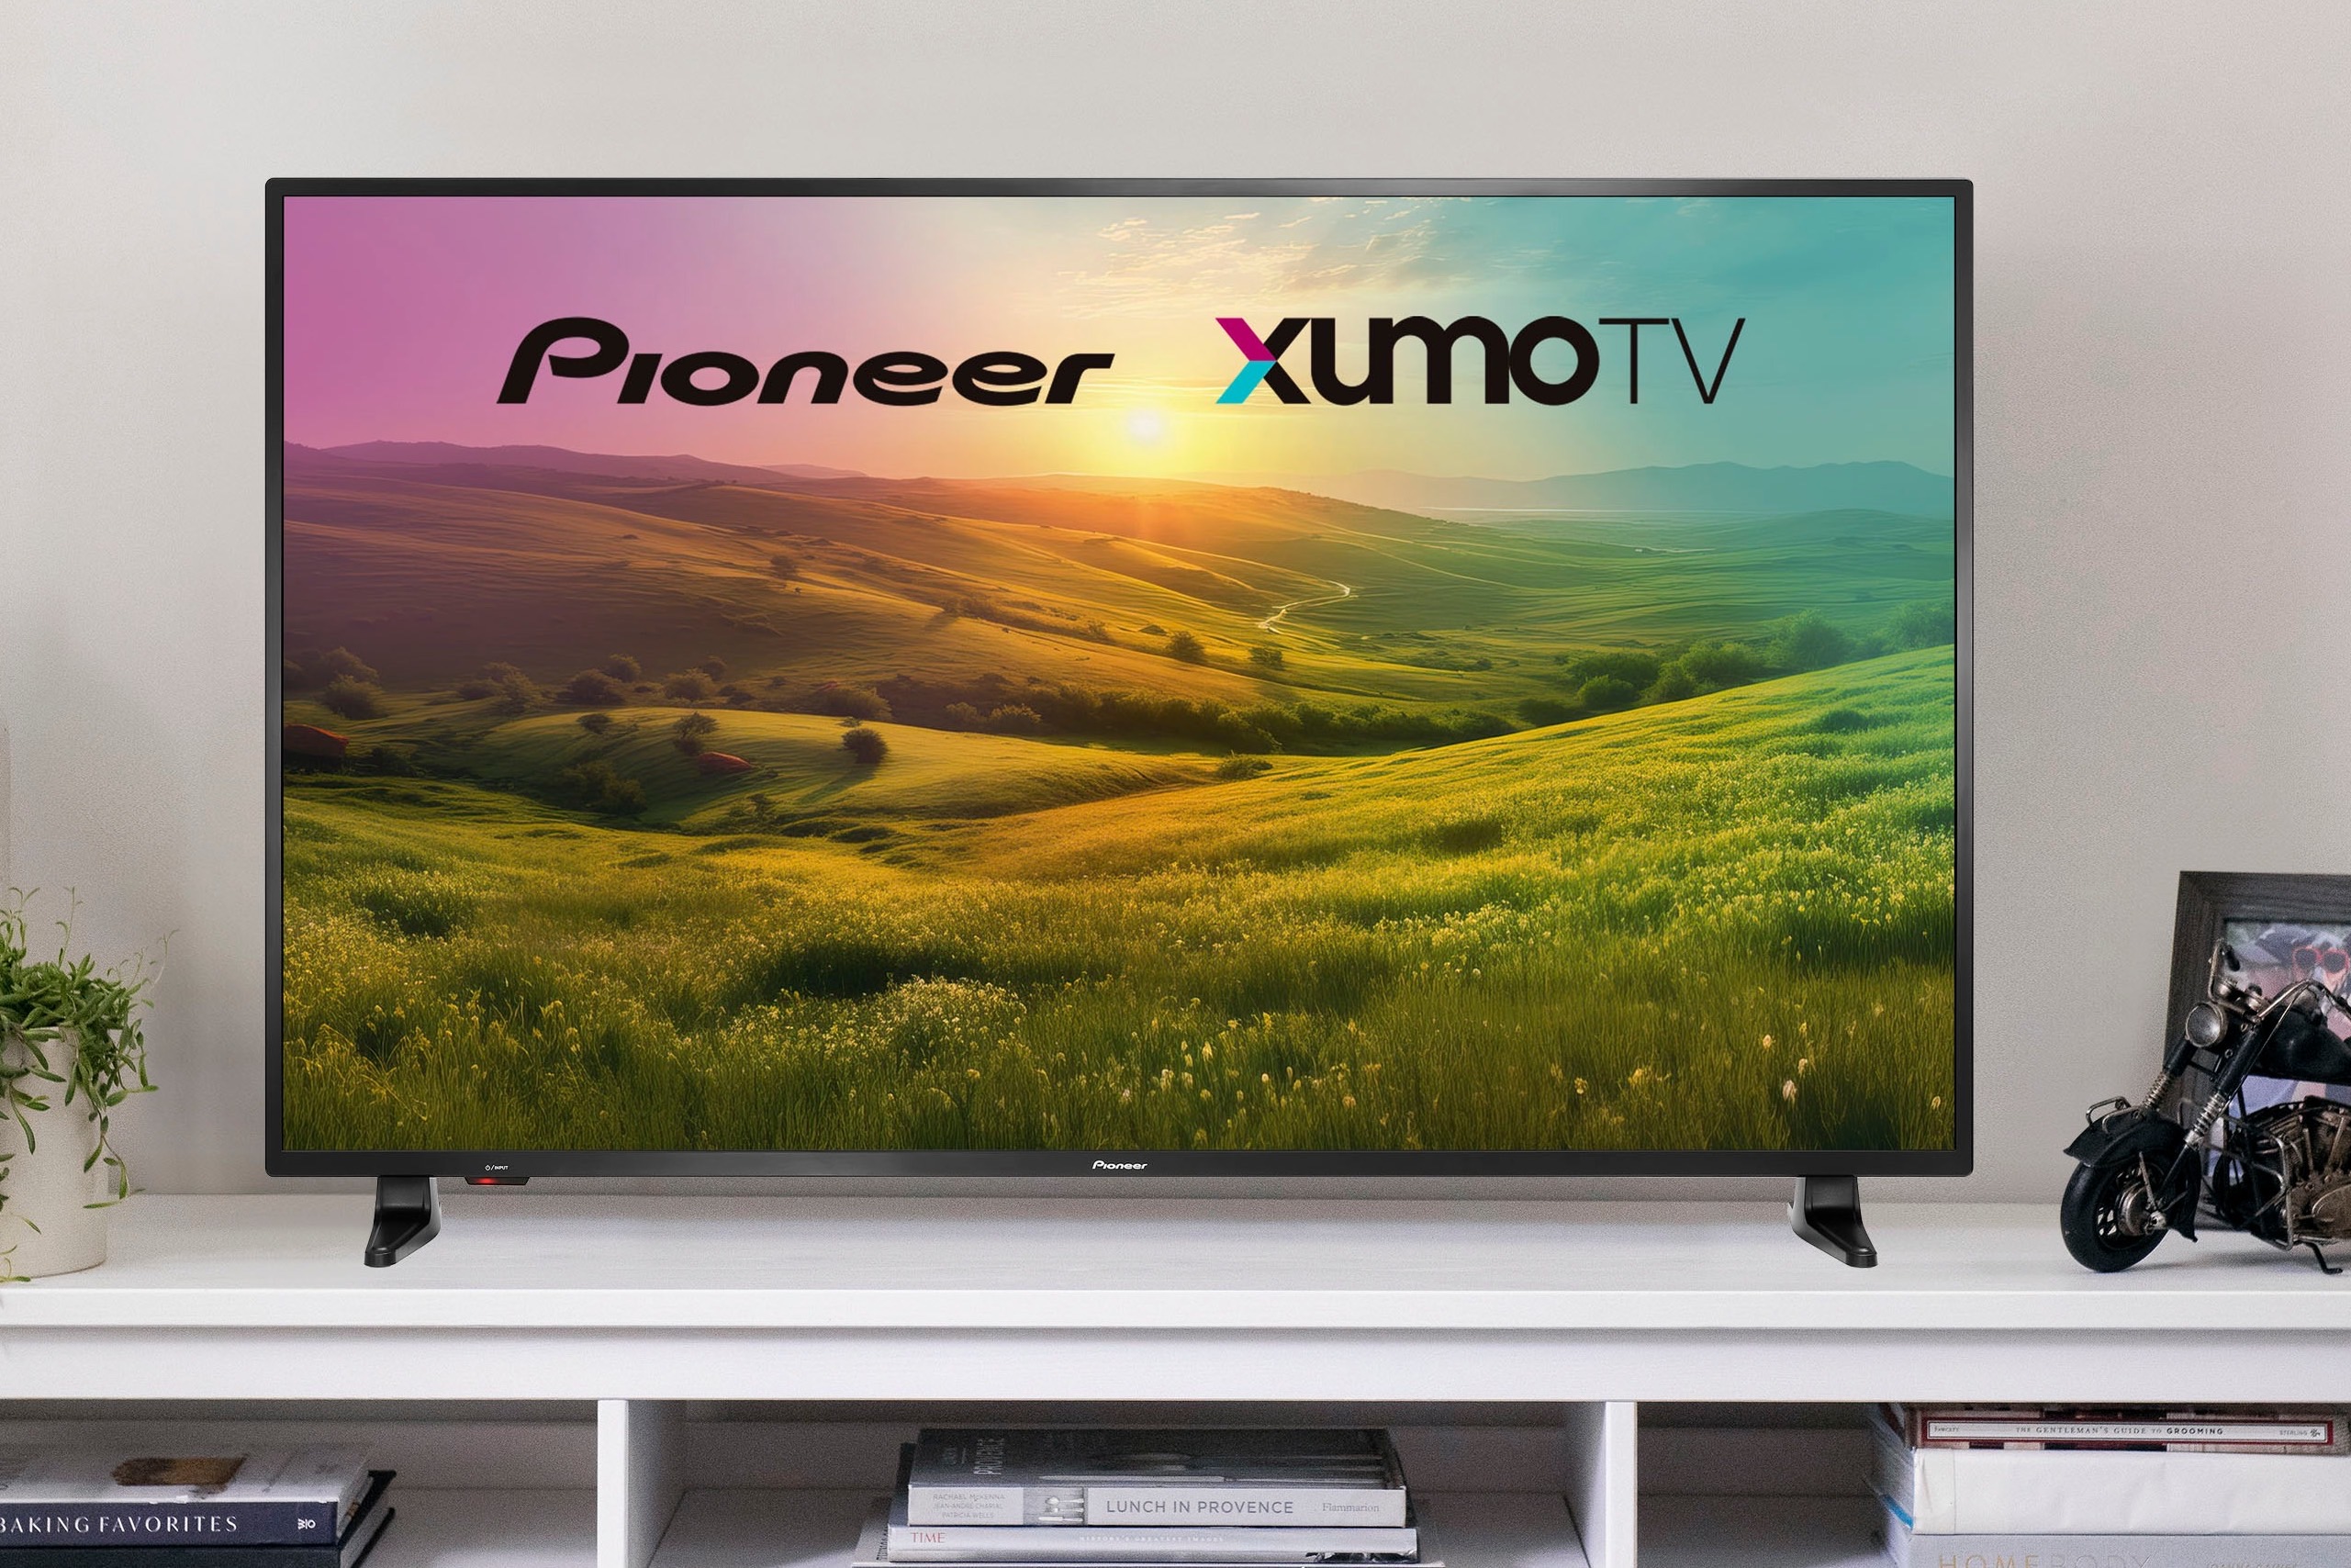 43 inch : TVs, Smart